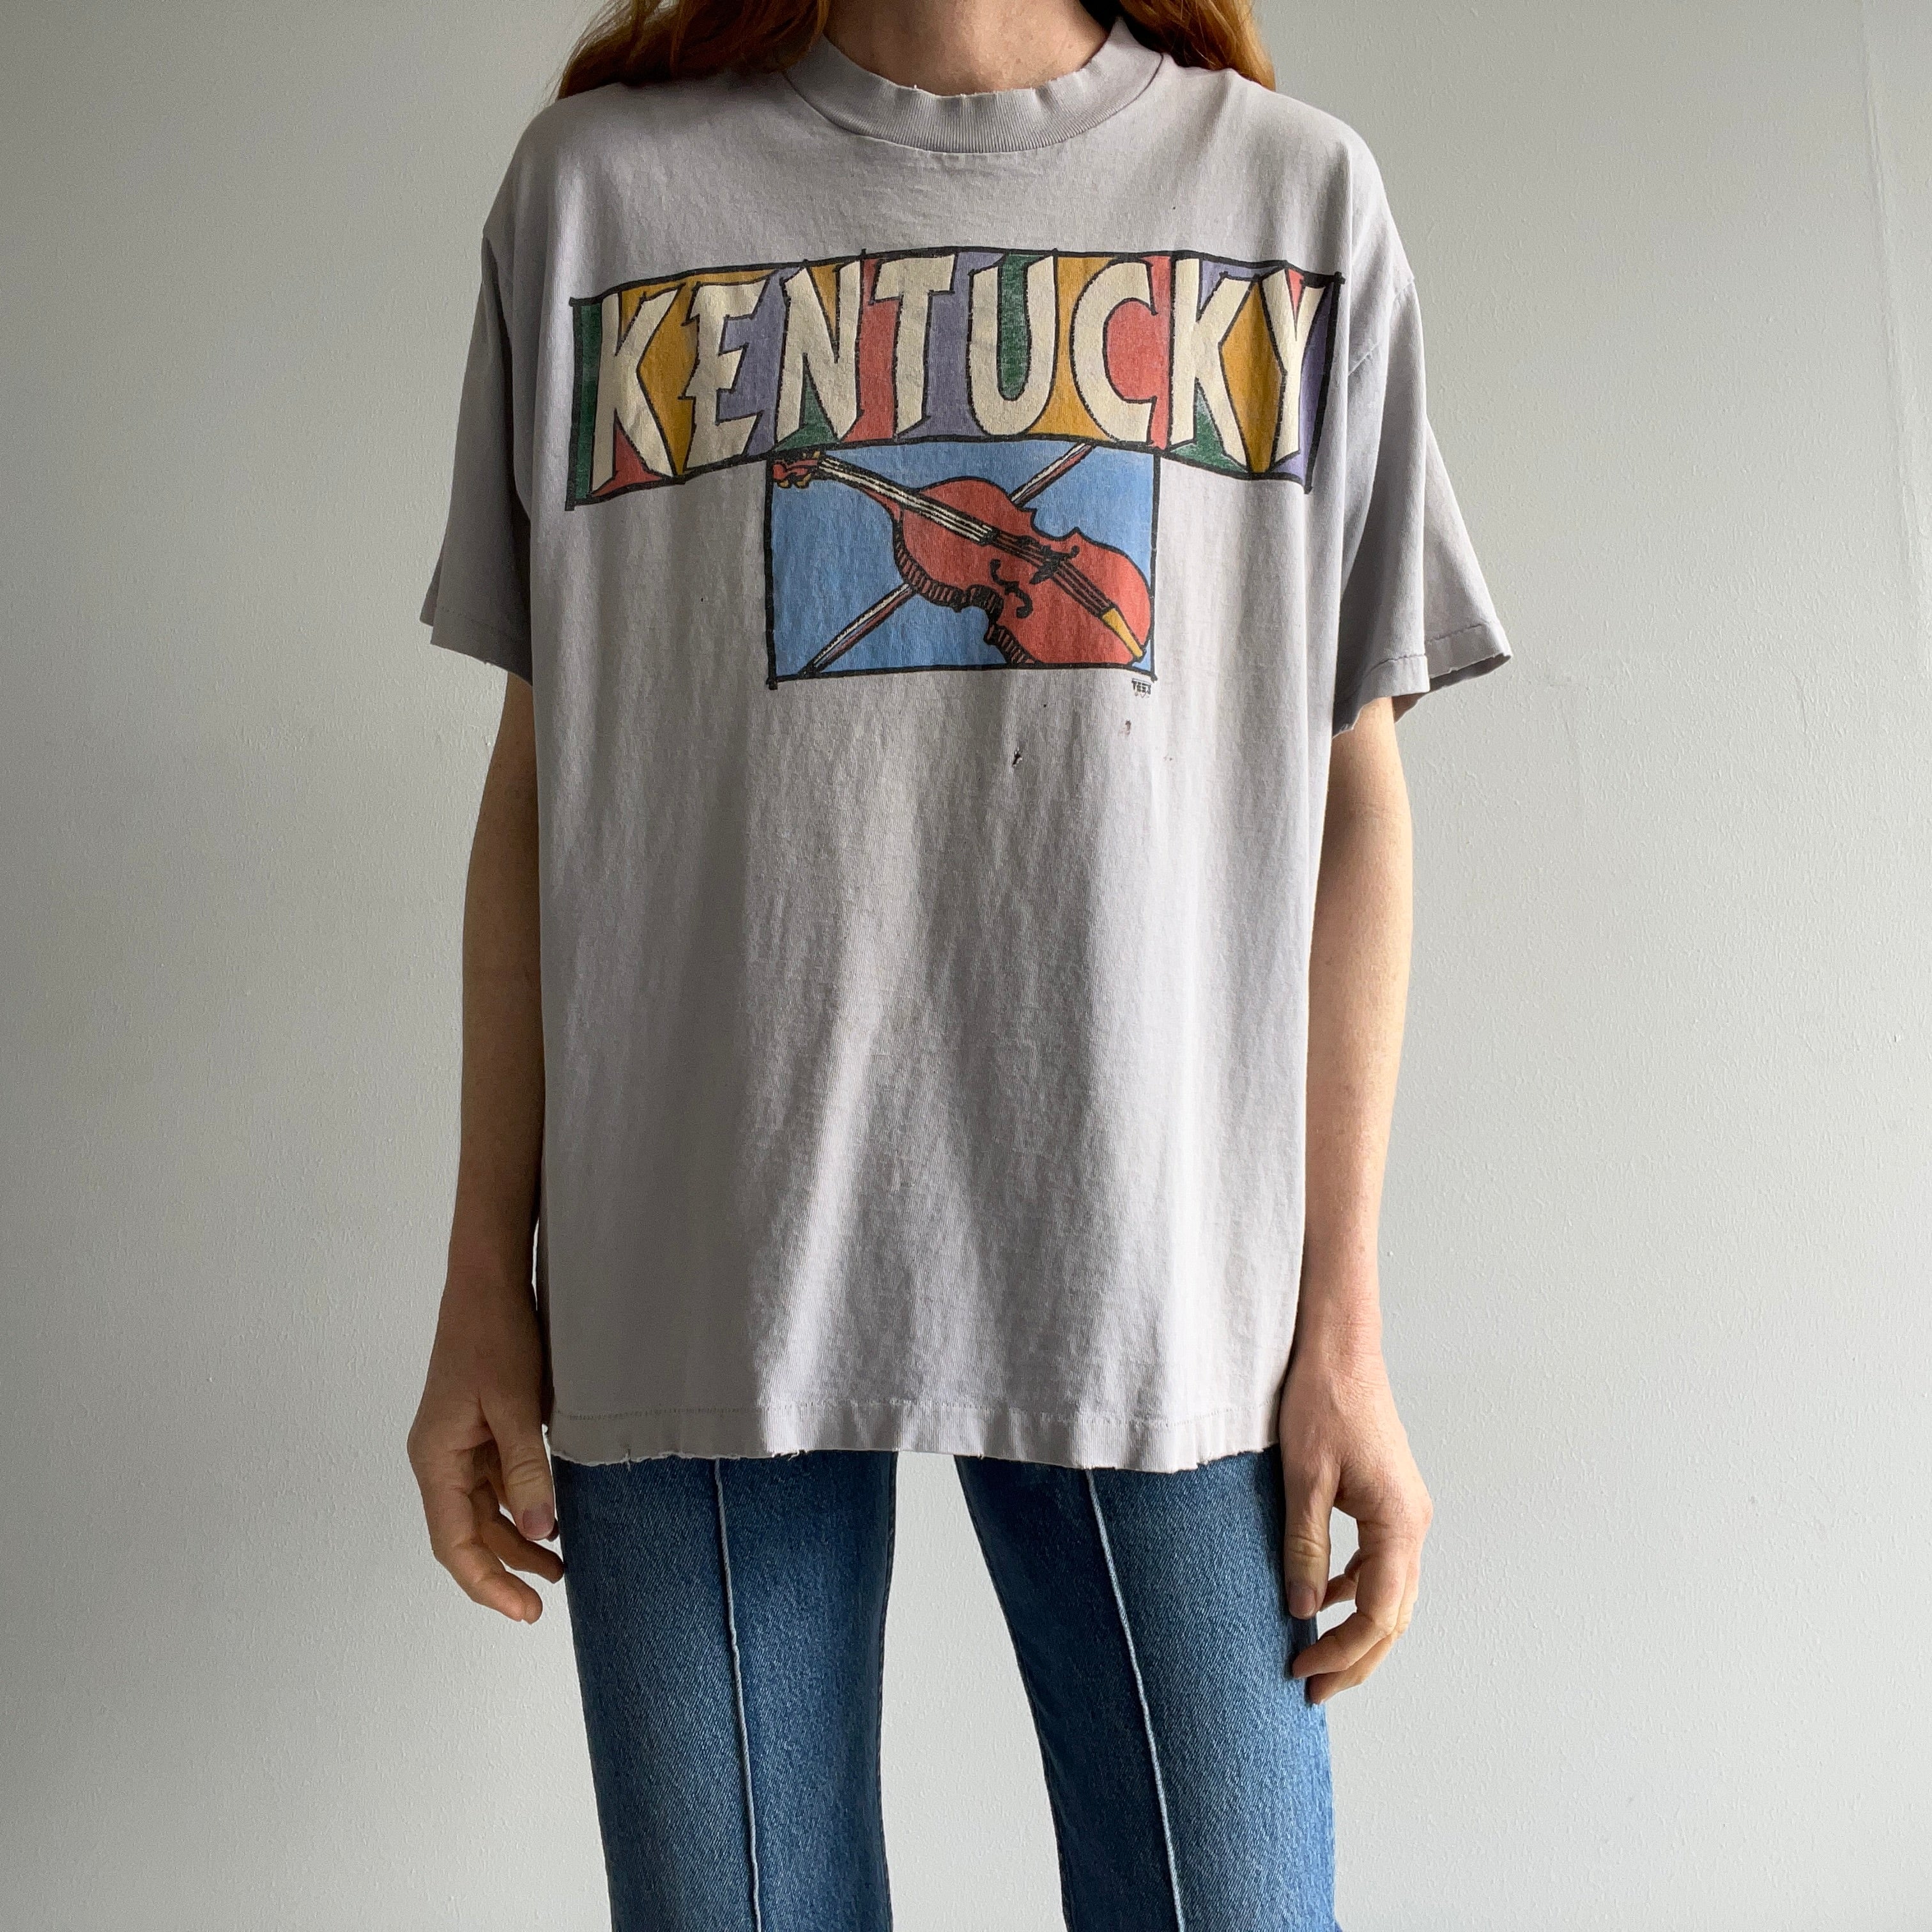 1980/90s Kentucky Tattered T-Shirt